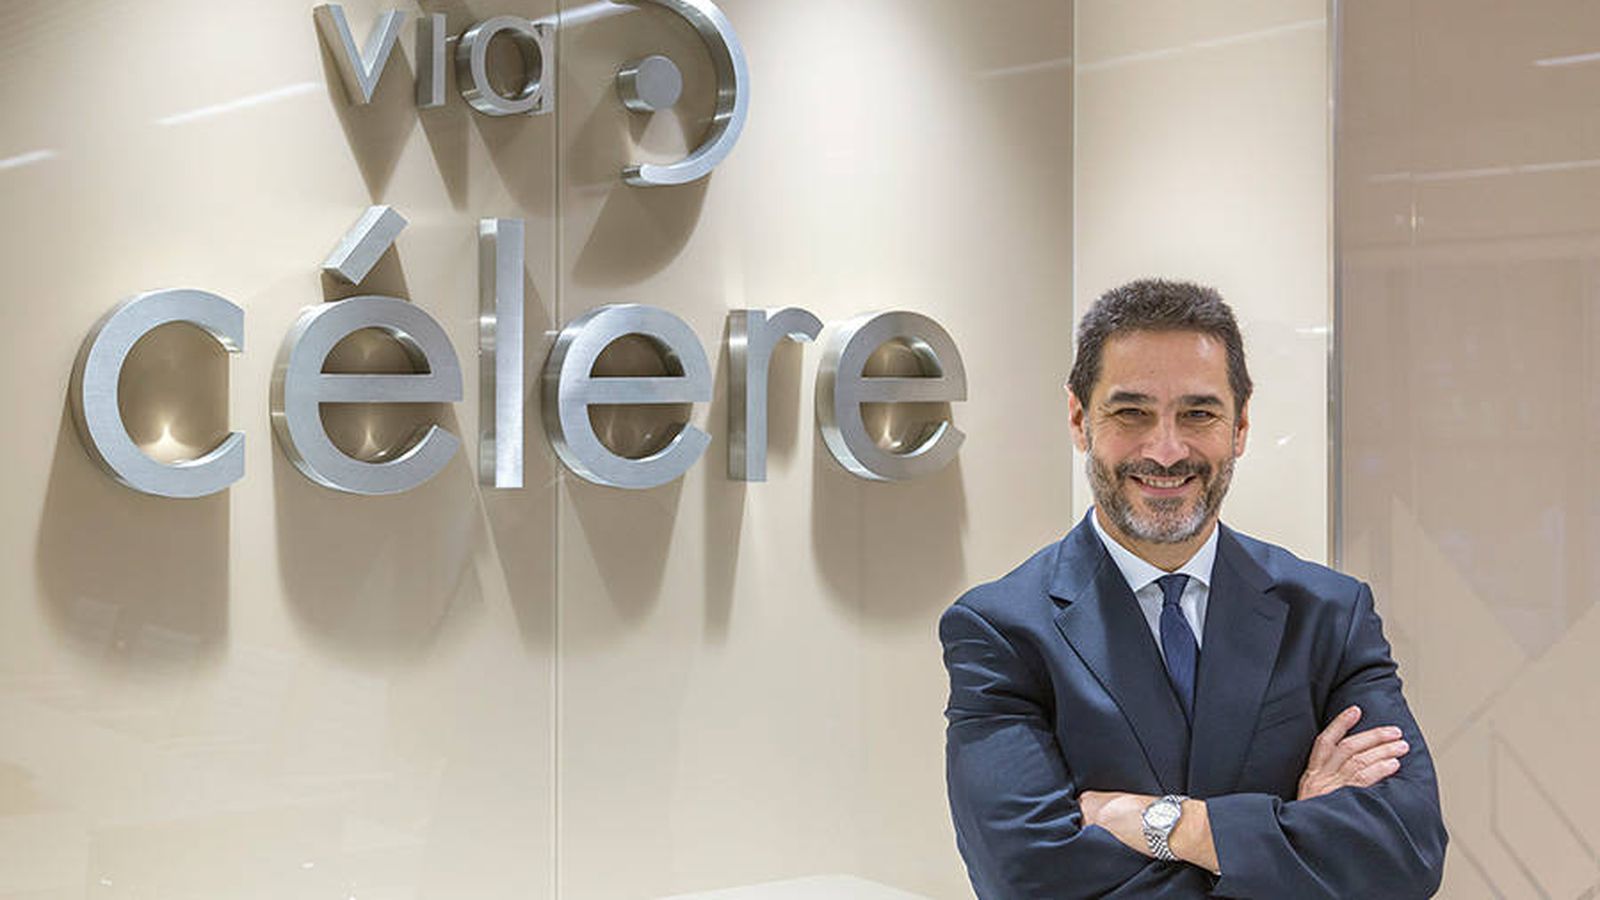 Foto: Juan Antonio Gómez-Pintado, presidente de los promotores de España, ha vendido su empresa, Vía Célere, a Värde.